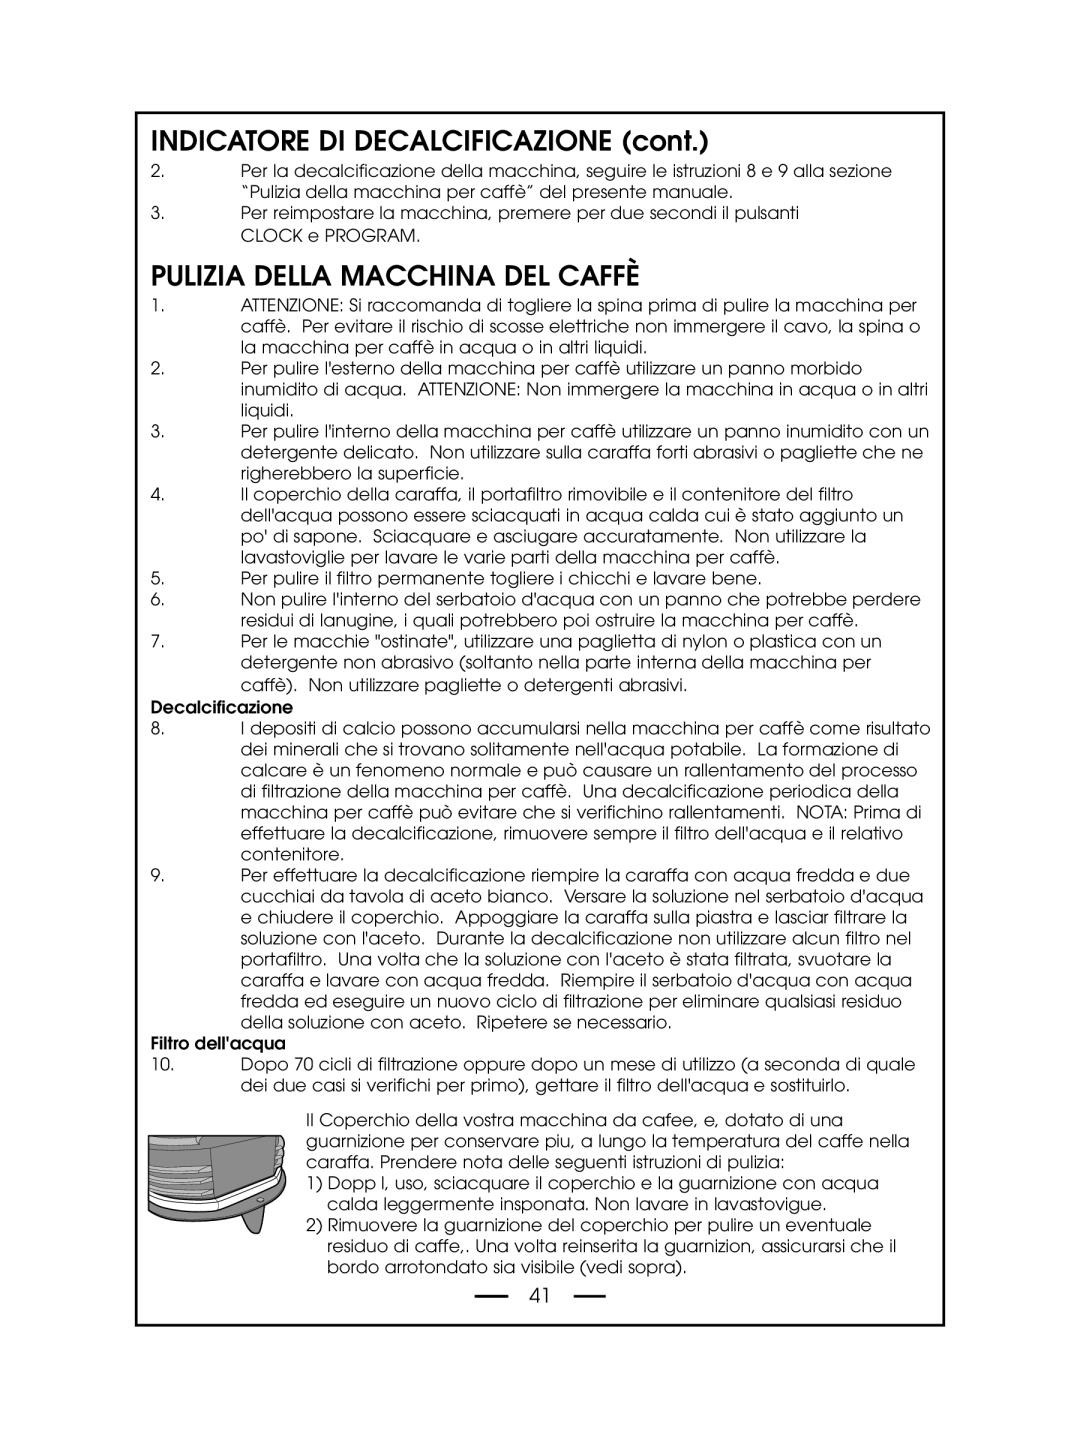 DeLonghi DCM485 instruction manual INDICATORE DI DECALCIFICAZIONE cont, Pulizia Della Macchina Del Caffè 